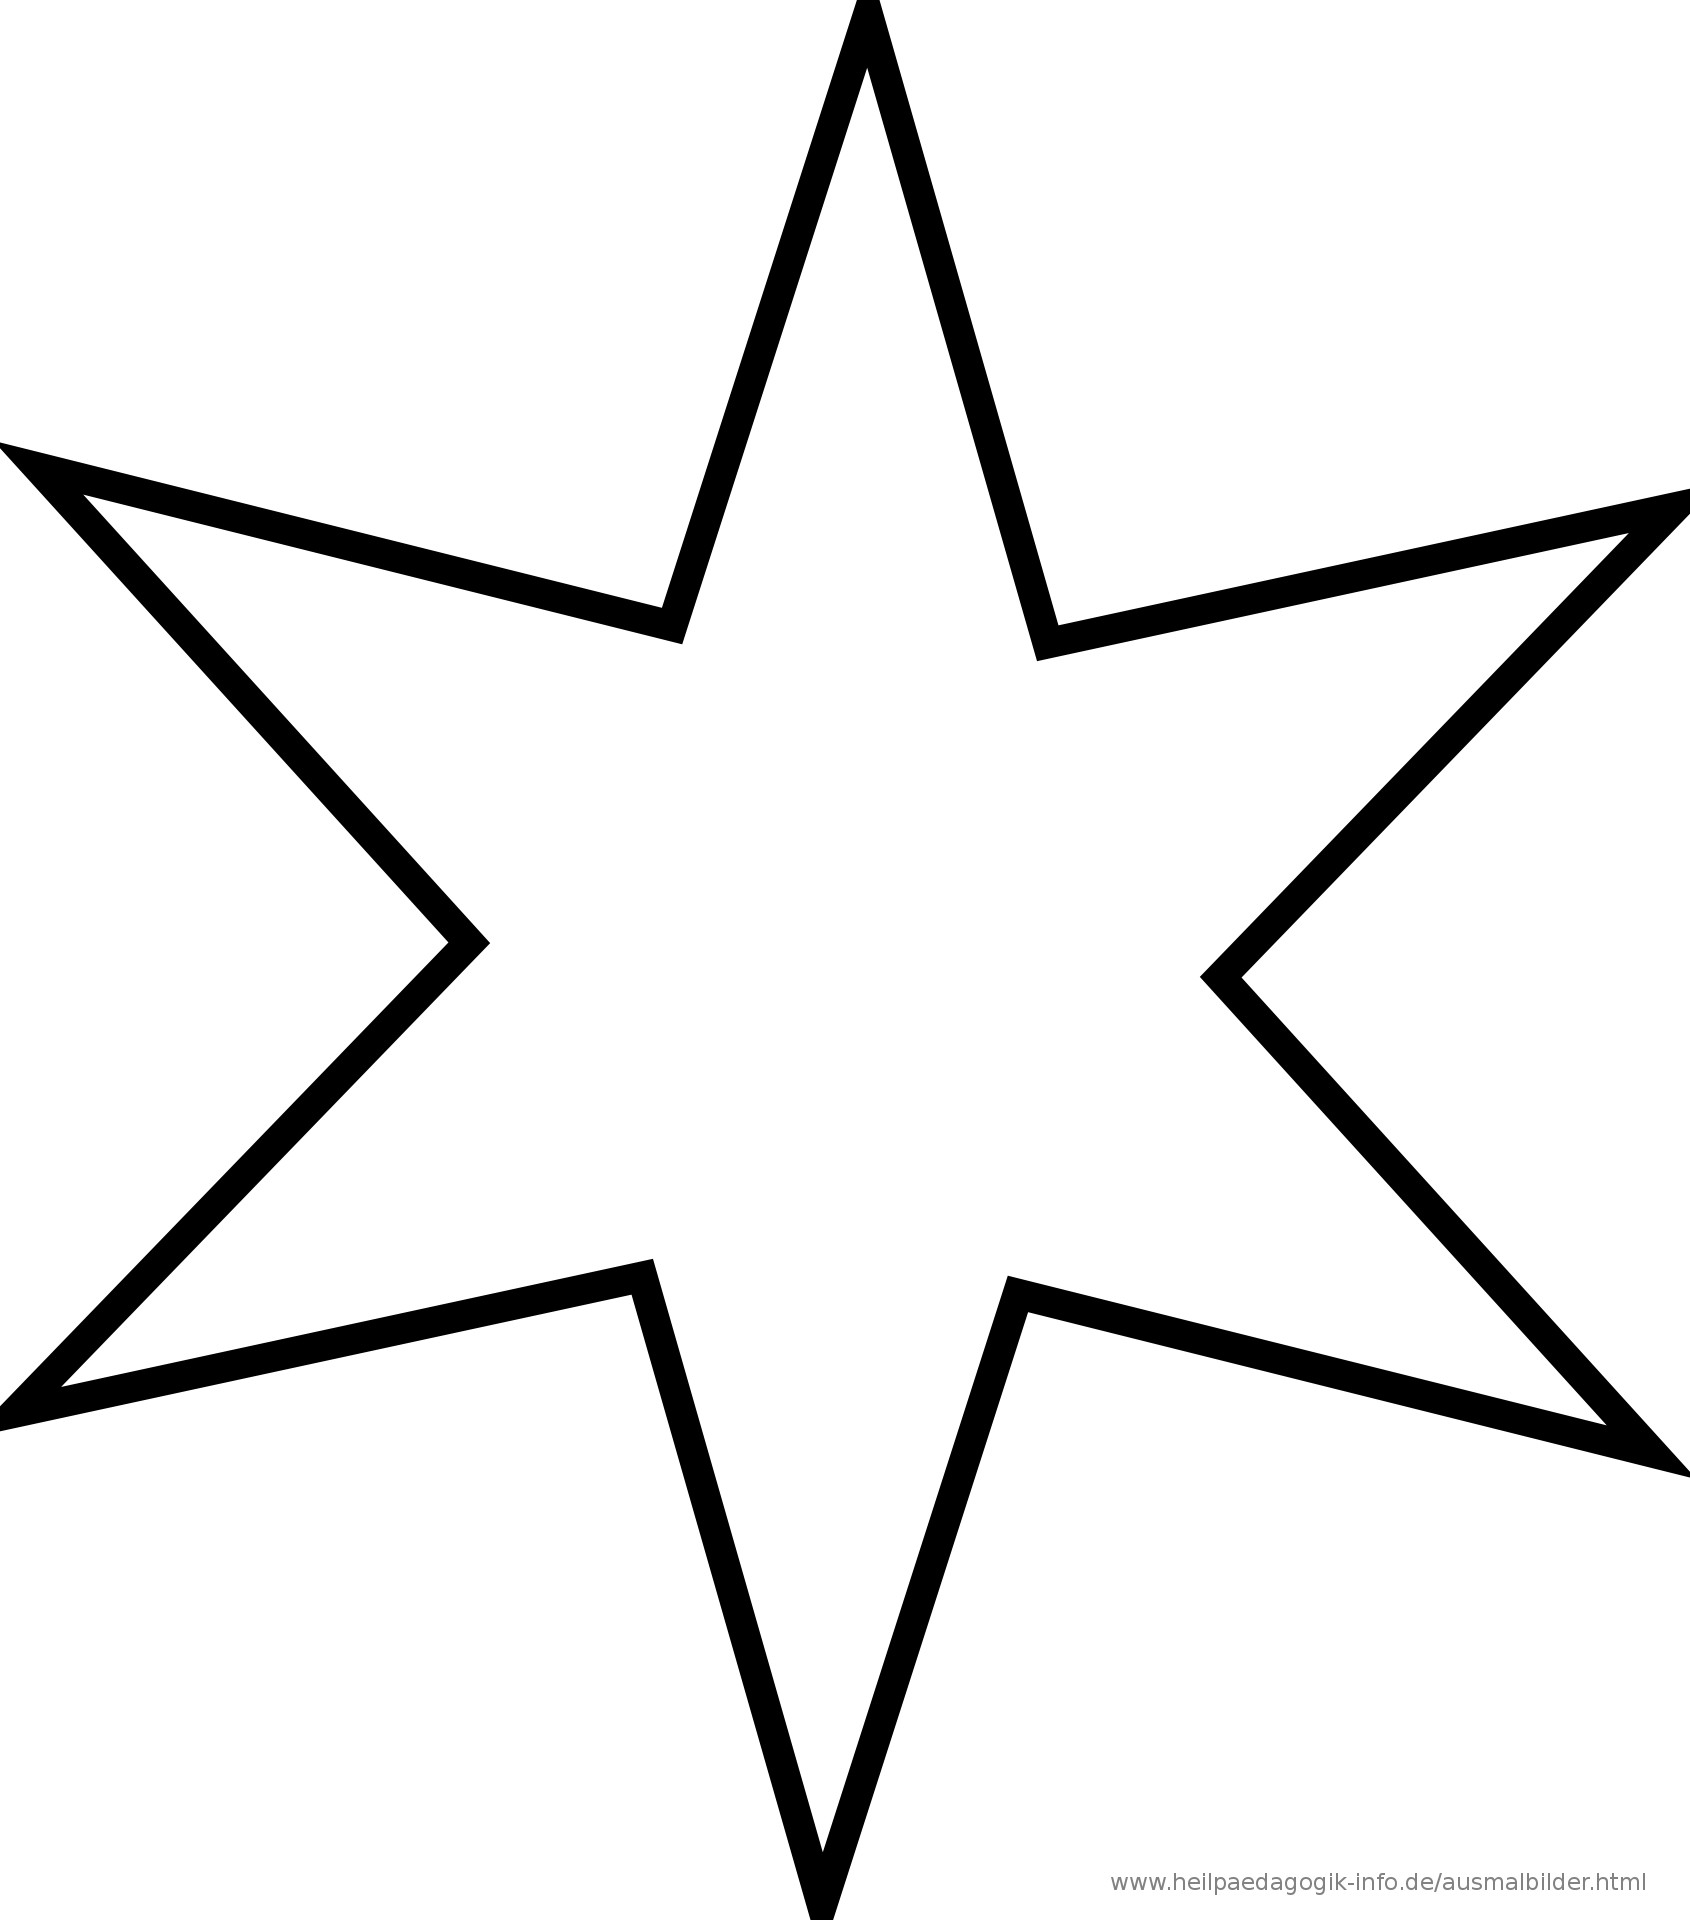 Malvorlagen Stern Kostenlos
 Ausmalbilder Sterne